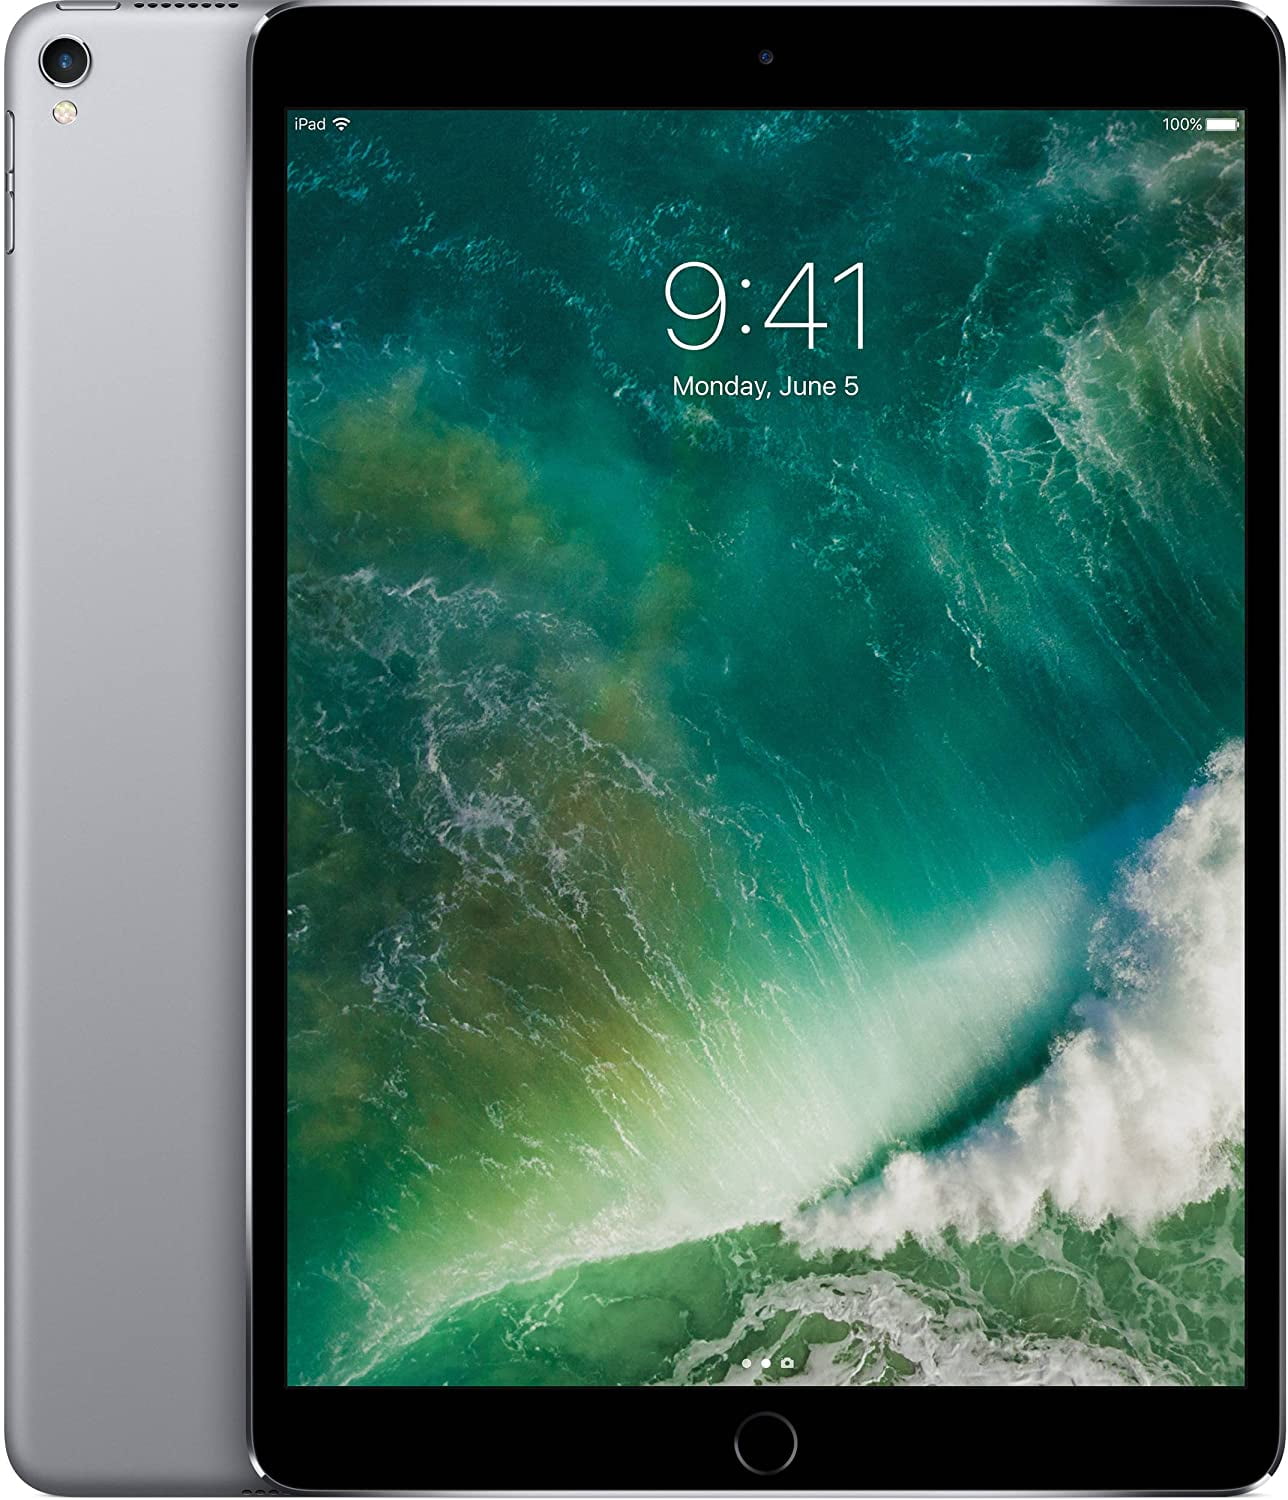 iPad Pro đã được phục hồi: Chiếc iPad Pro này đã được phục hồi lại như mới với chất lượng tuyệt vời và giá cả hợp lý. Hãy xem hình ảnh trước và sau khi phục hồi để cảm thấy sự ấn tượng và hài lòng.